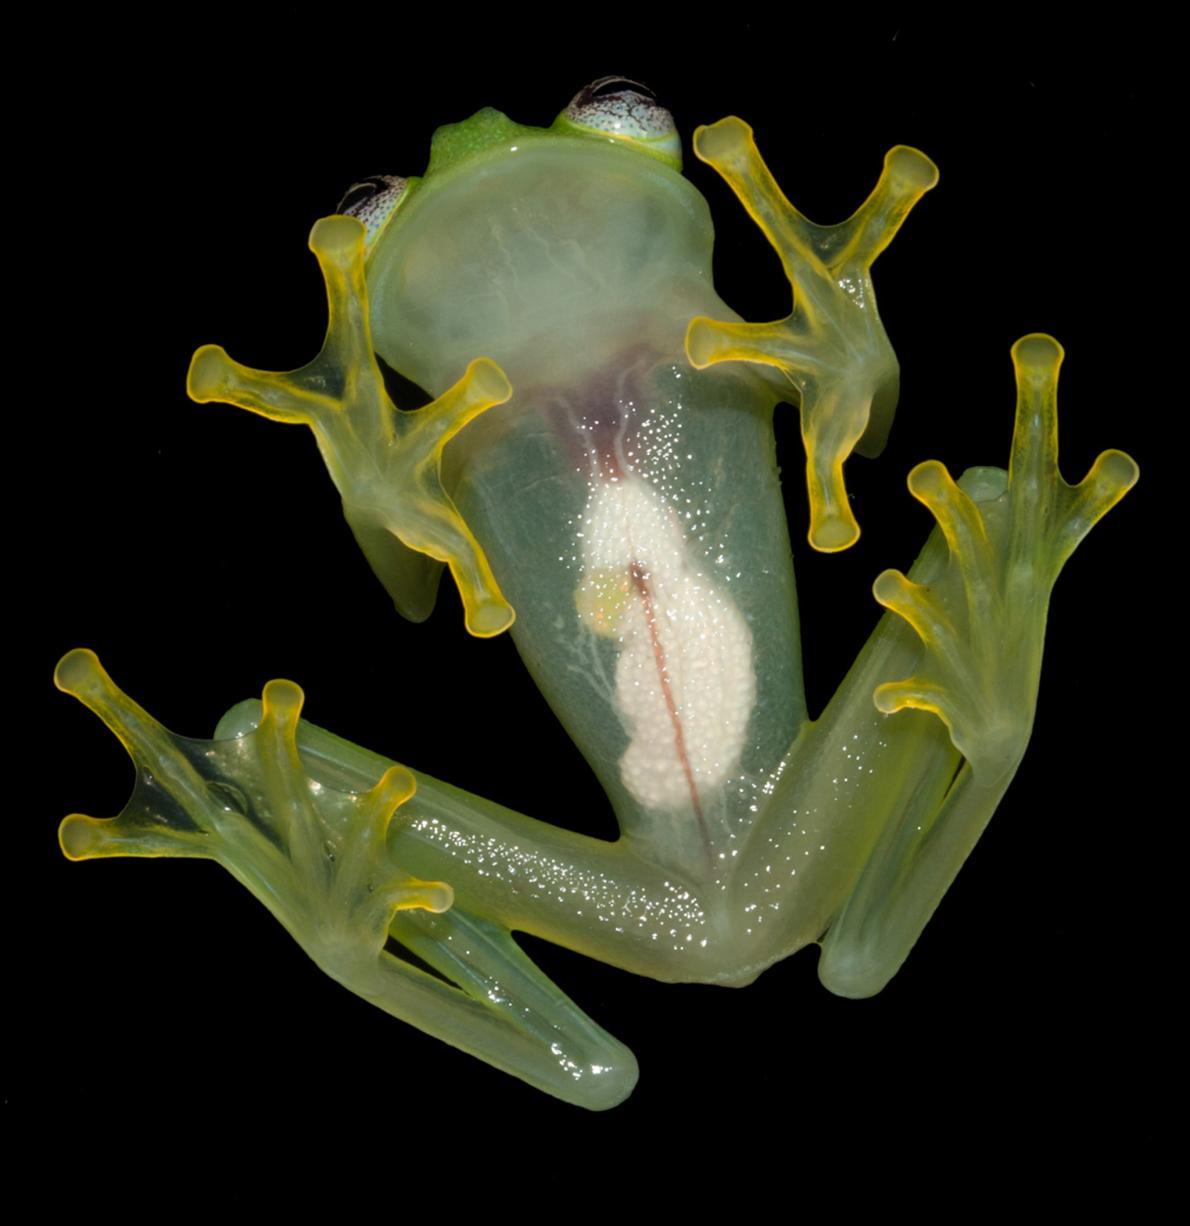 F'd up news, kermit frog